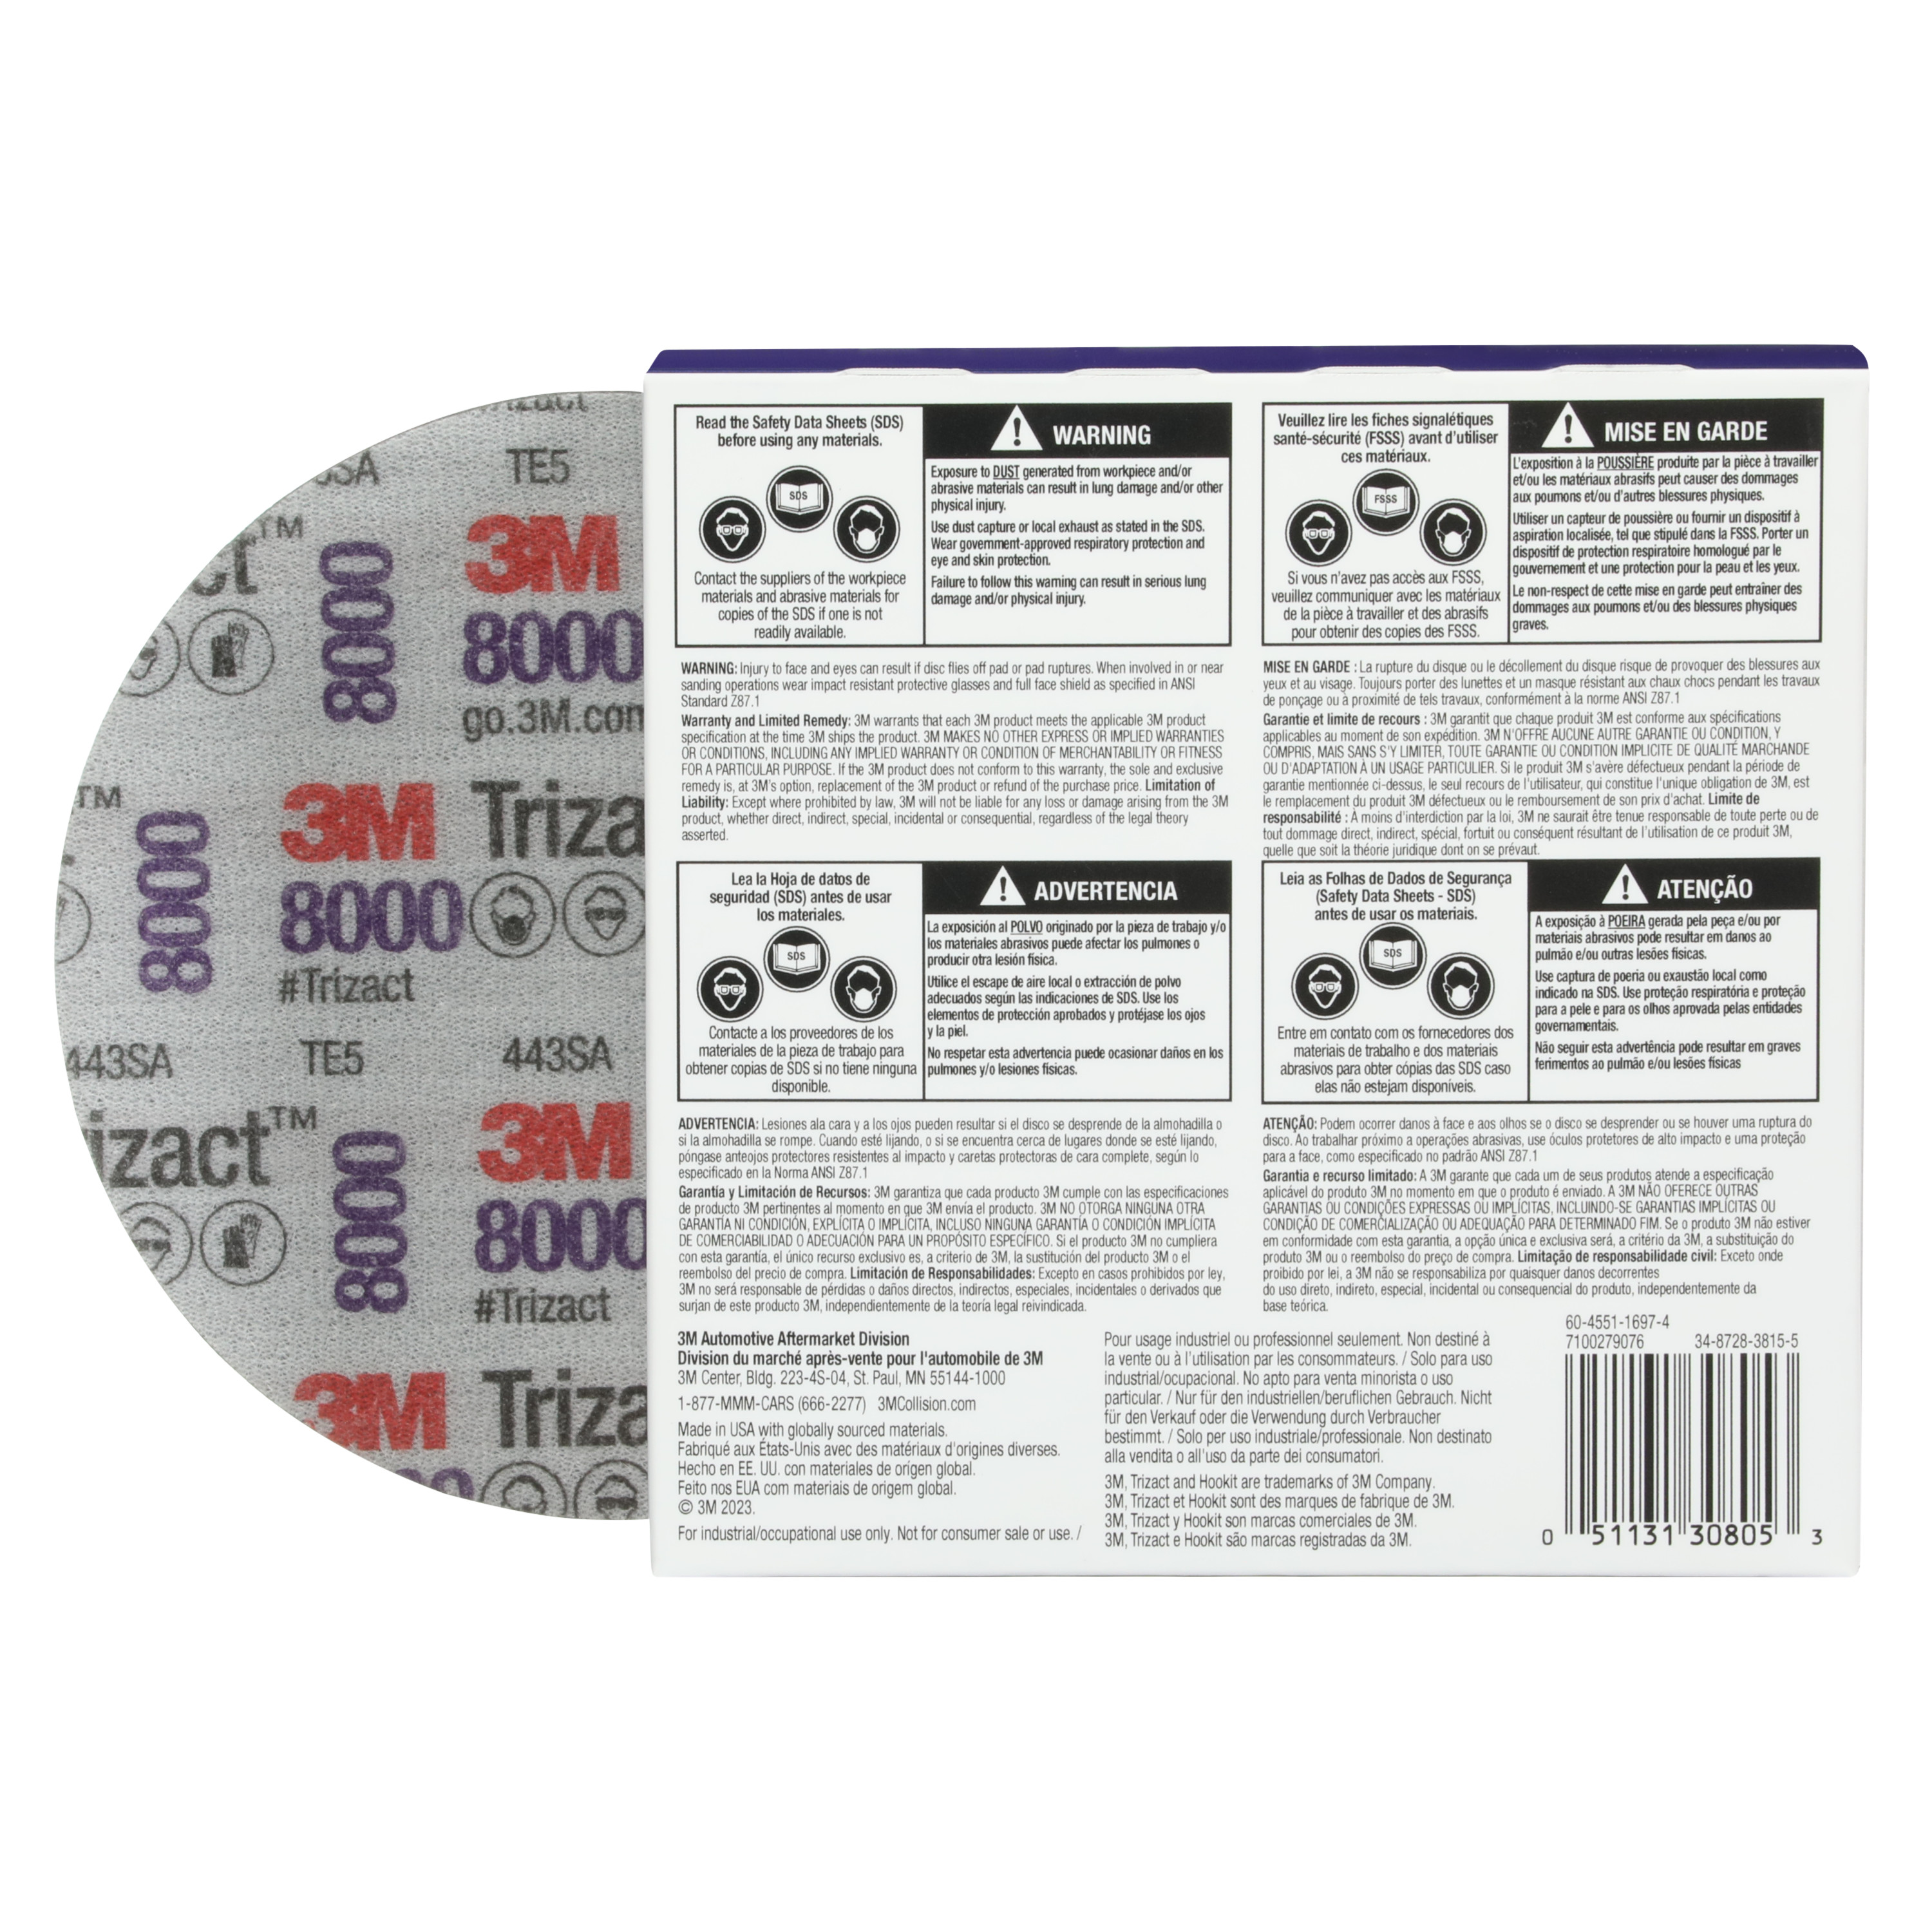 SKU 7100193766 | 3M™ Trizact™ Hookit™ Foam Disc 30805